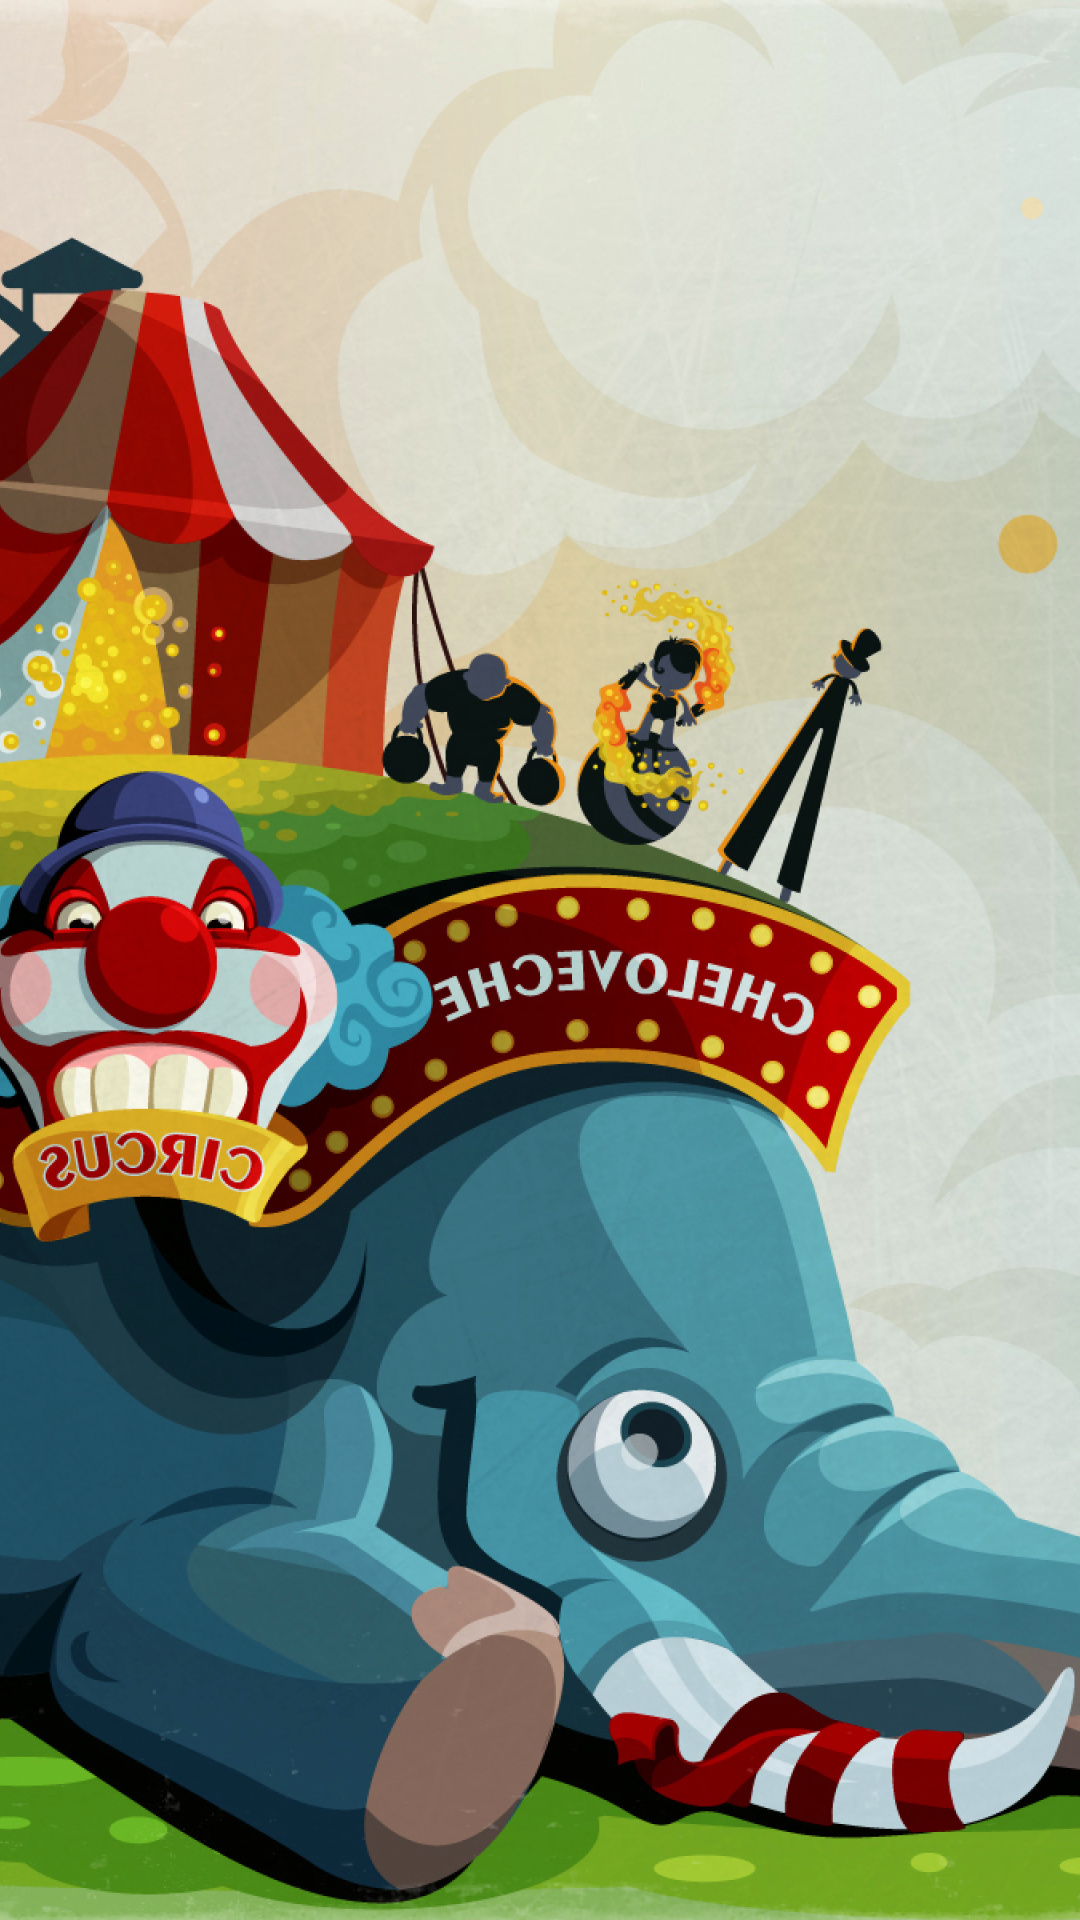 Fondo de pantalla Circus with Elephant 1080x1920